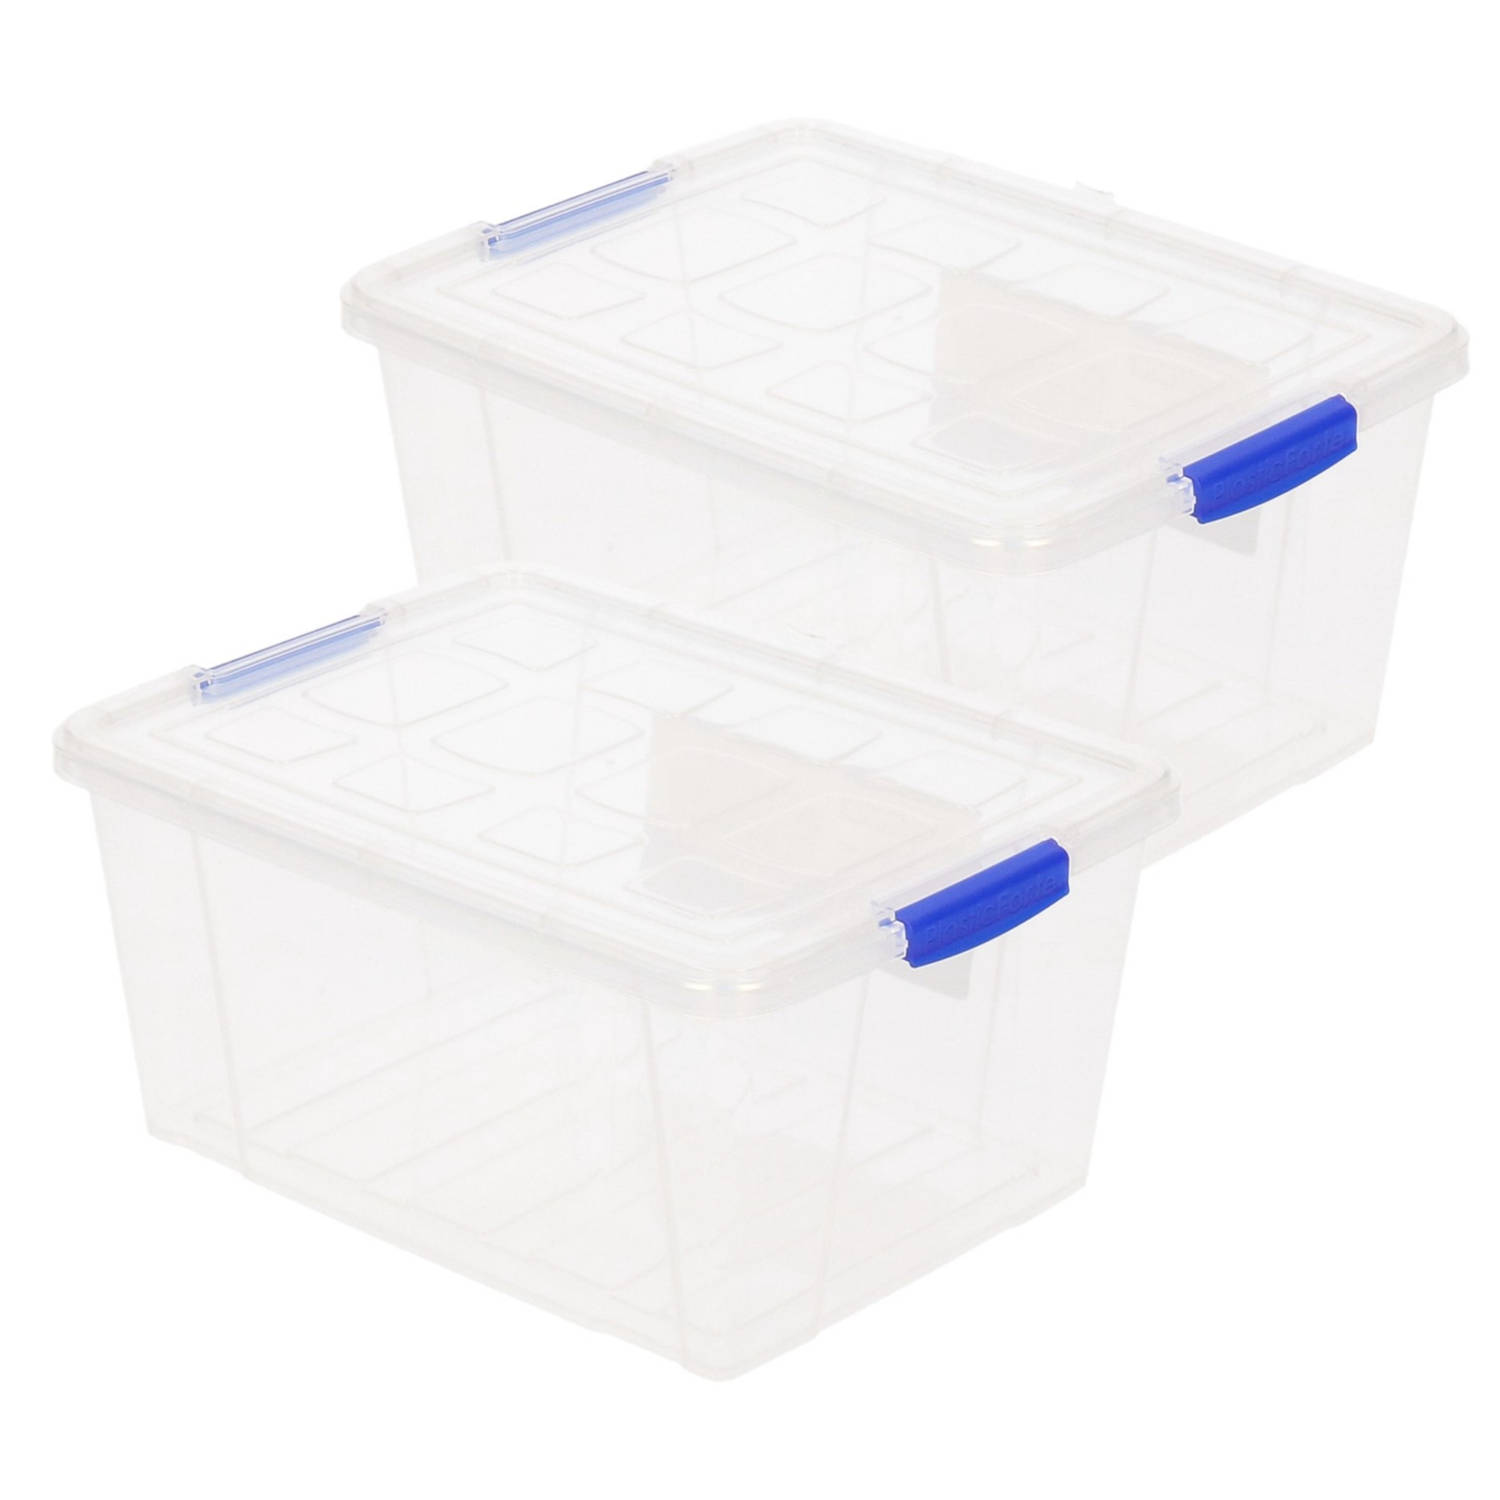 2x Stuks Opslagboxen-bakken-organizers Met Deksel 16 Liter 40 X 30 X 21 Cm Transparant Plastic Opber